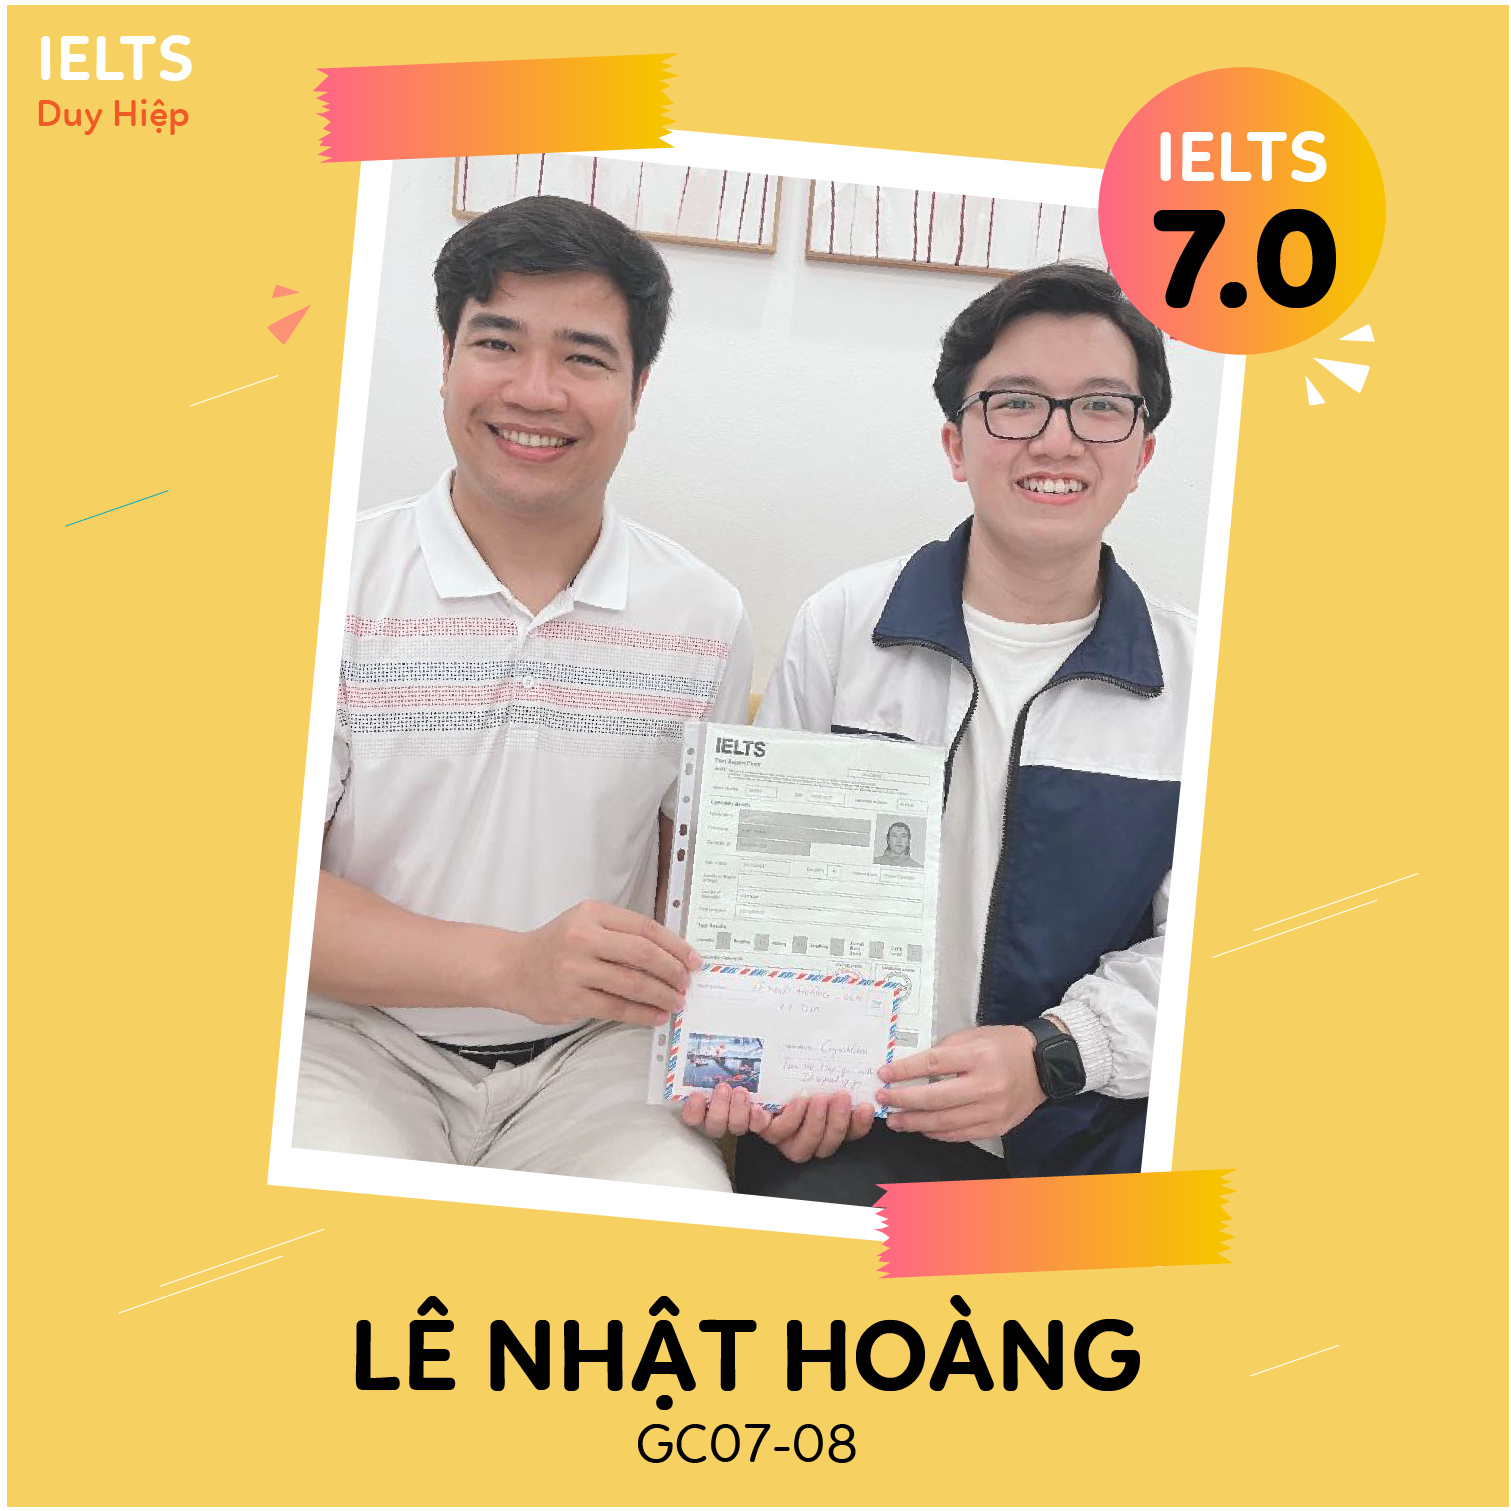 WALL OF FAME - Lê Nhật Hoàng 7.0 IELTS